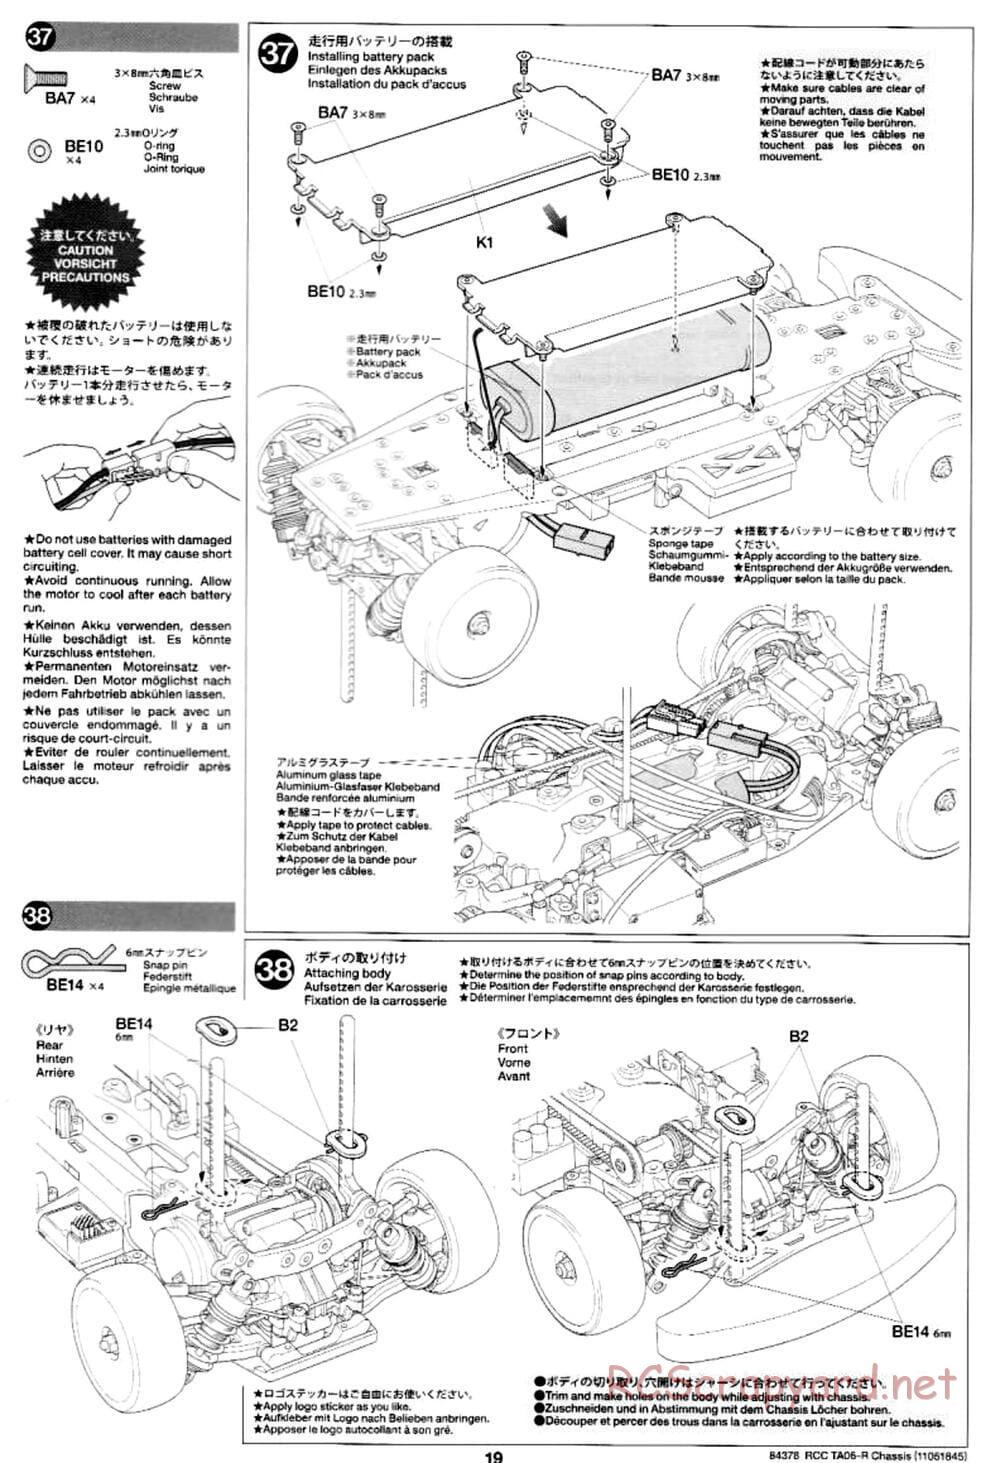 Tamiya - TA06-R Chassis - Manual - Page 19